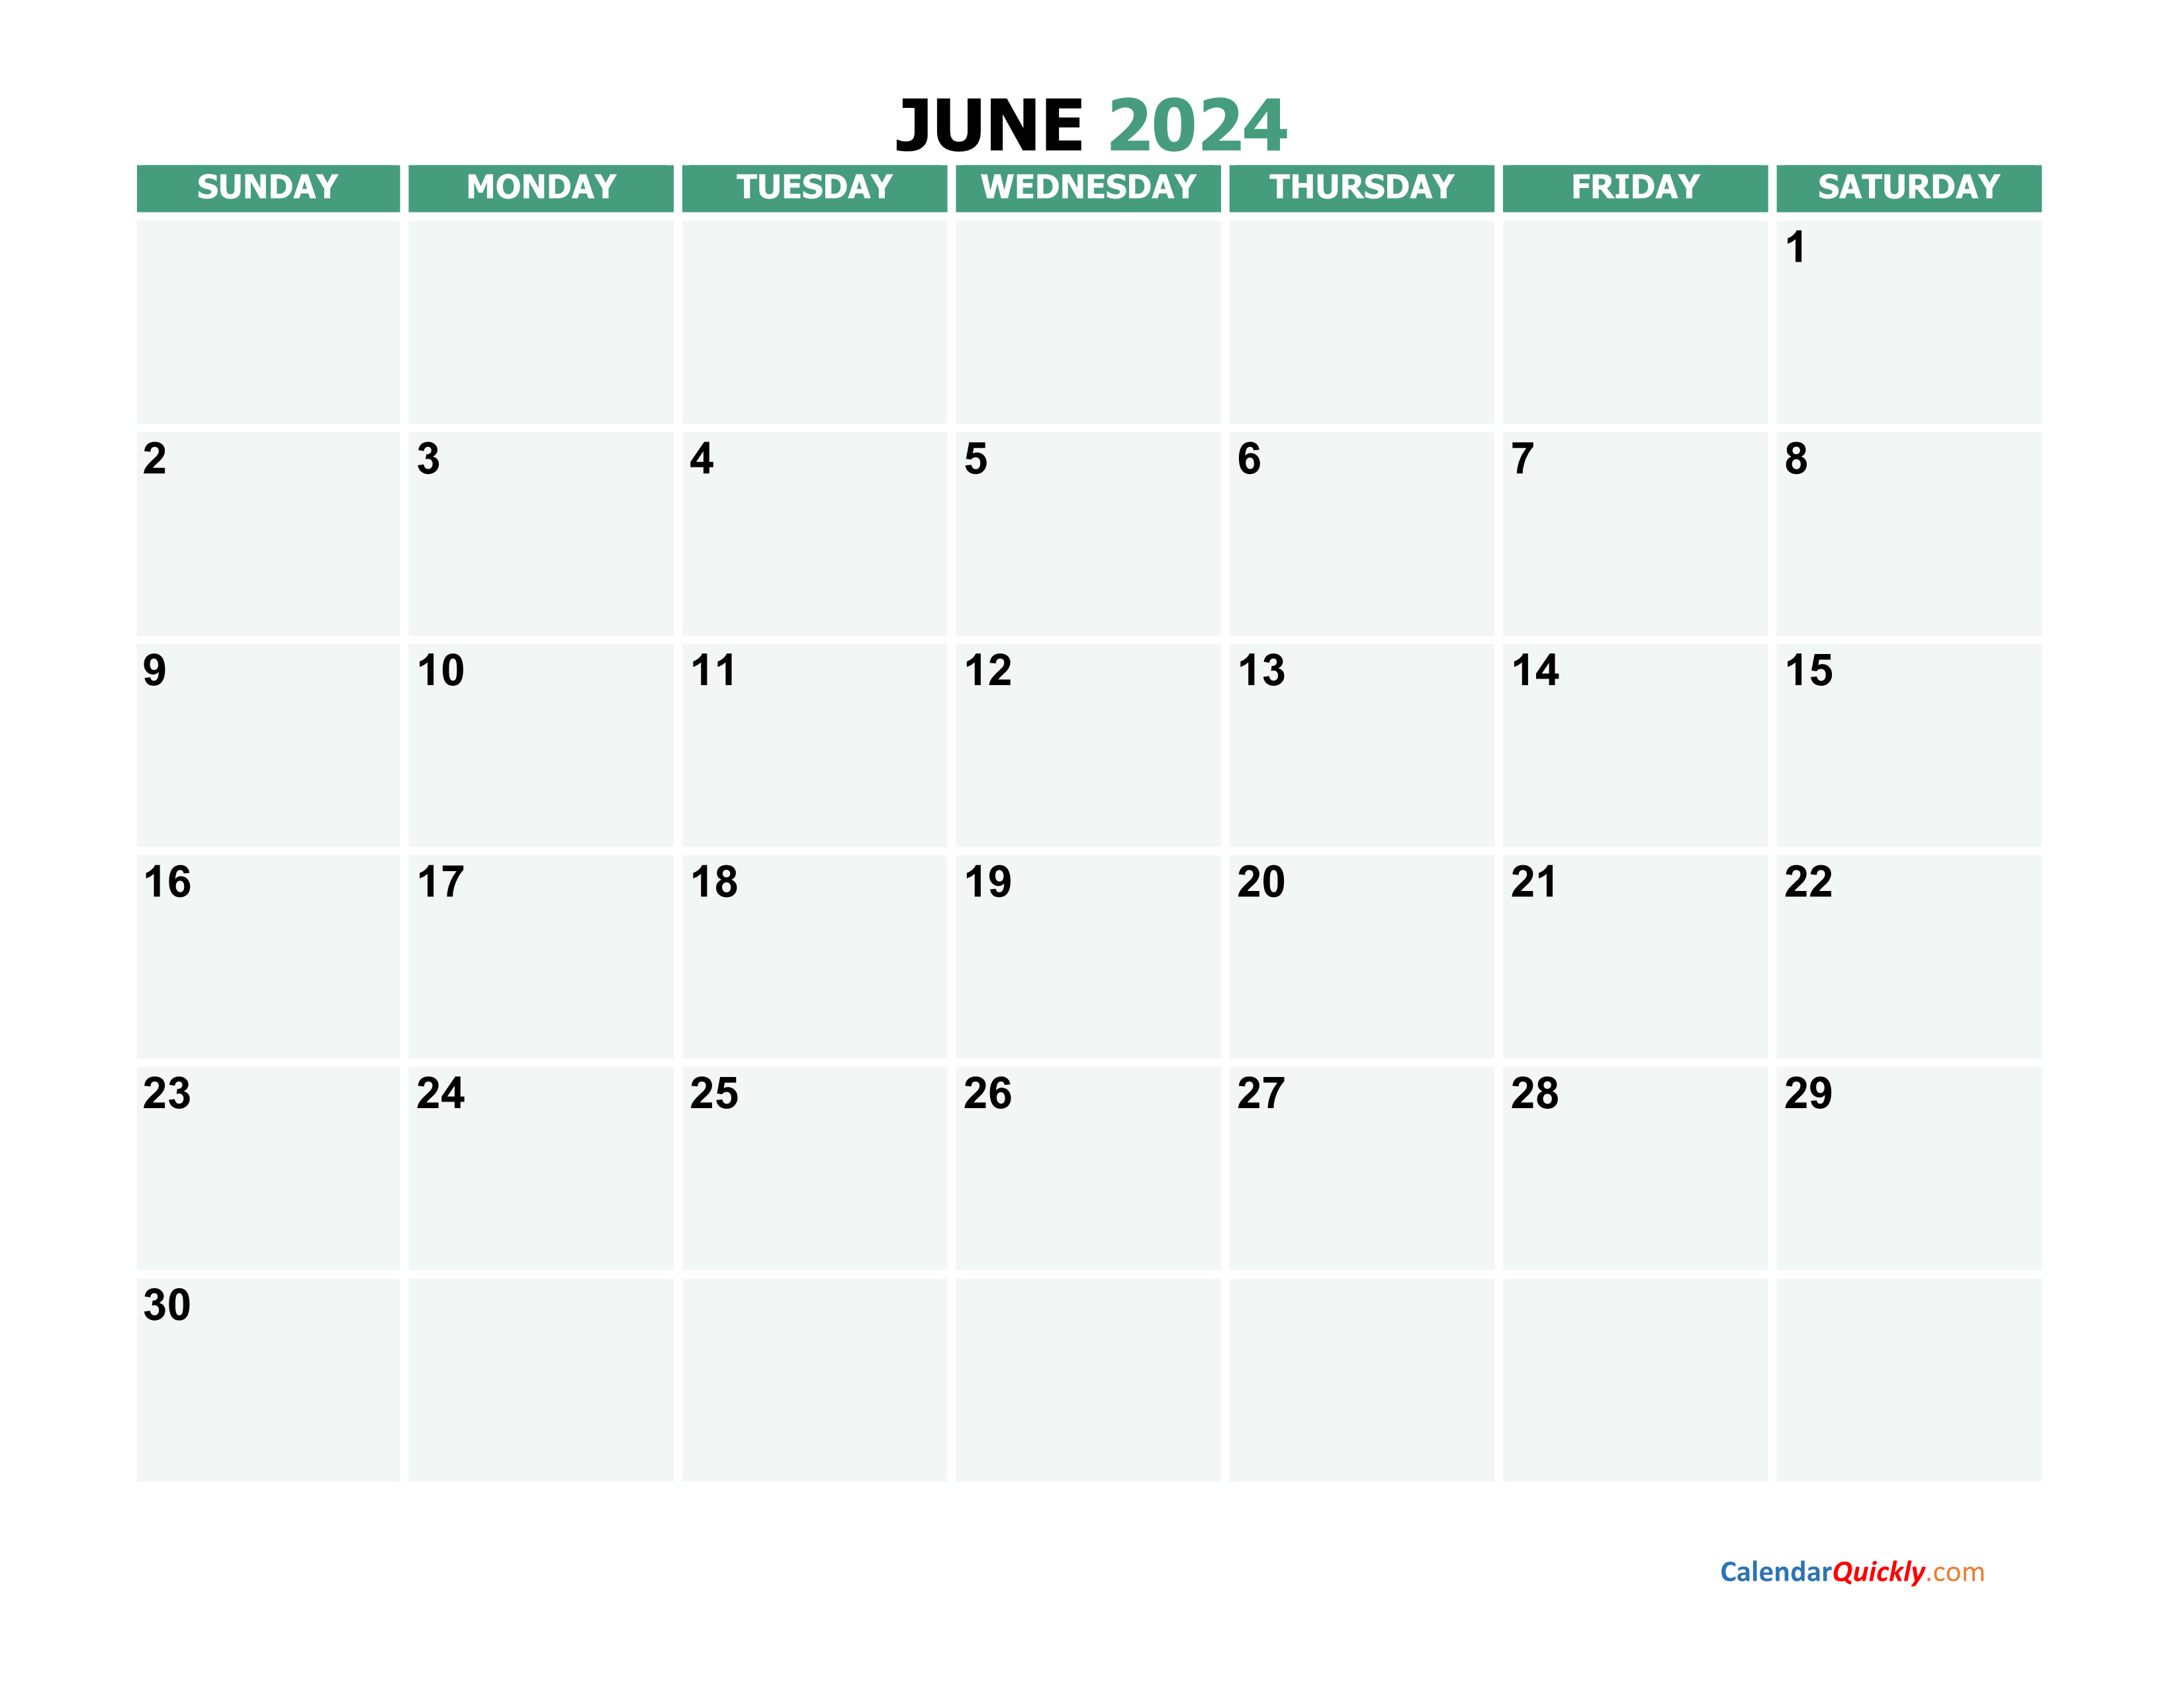 June 2024 Calendars | Calendar Quickly